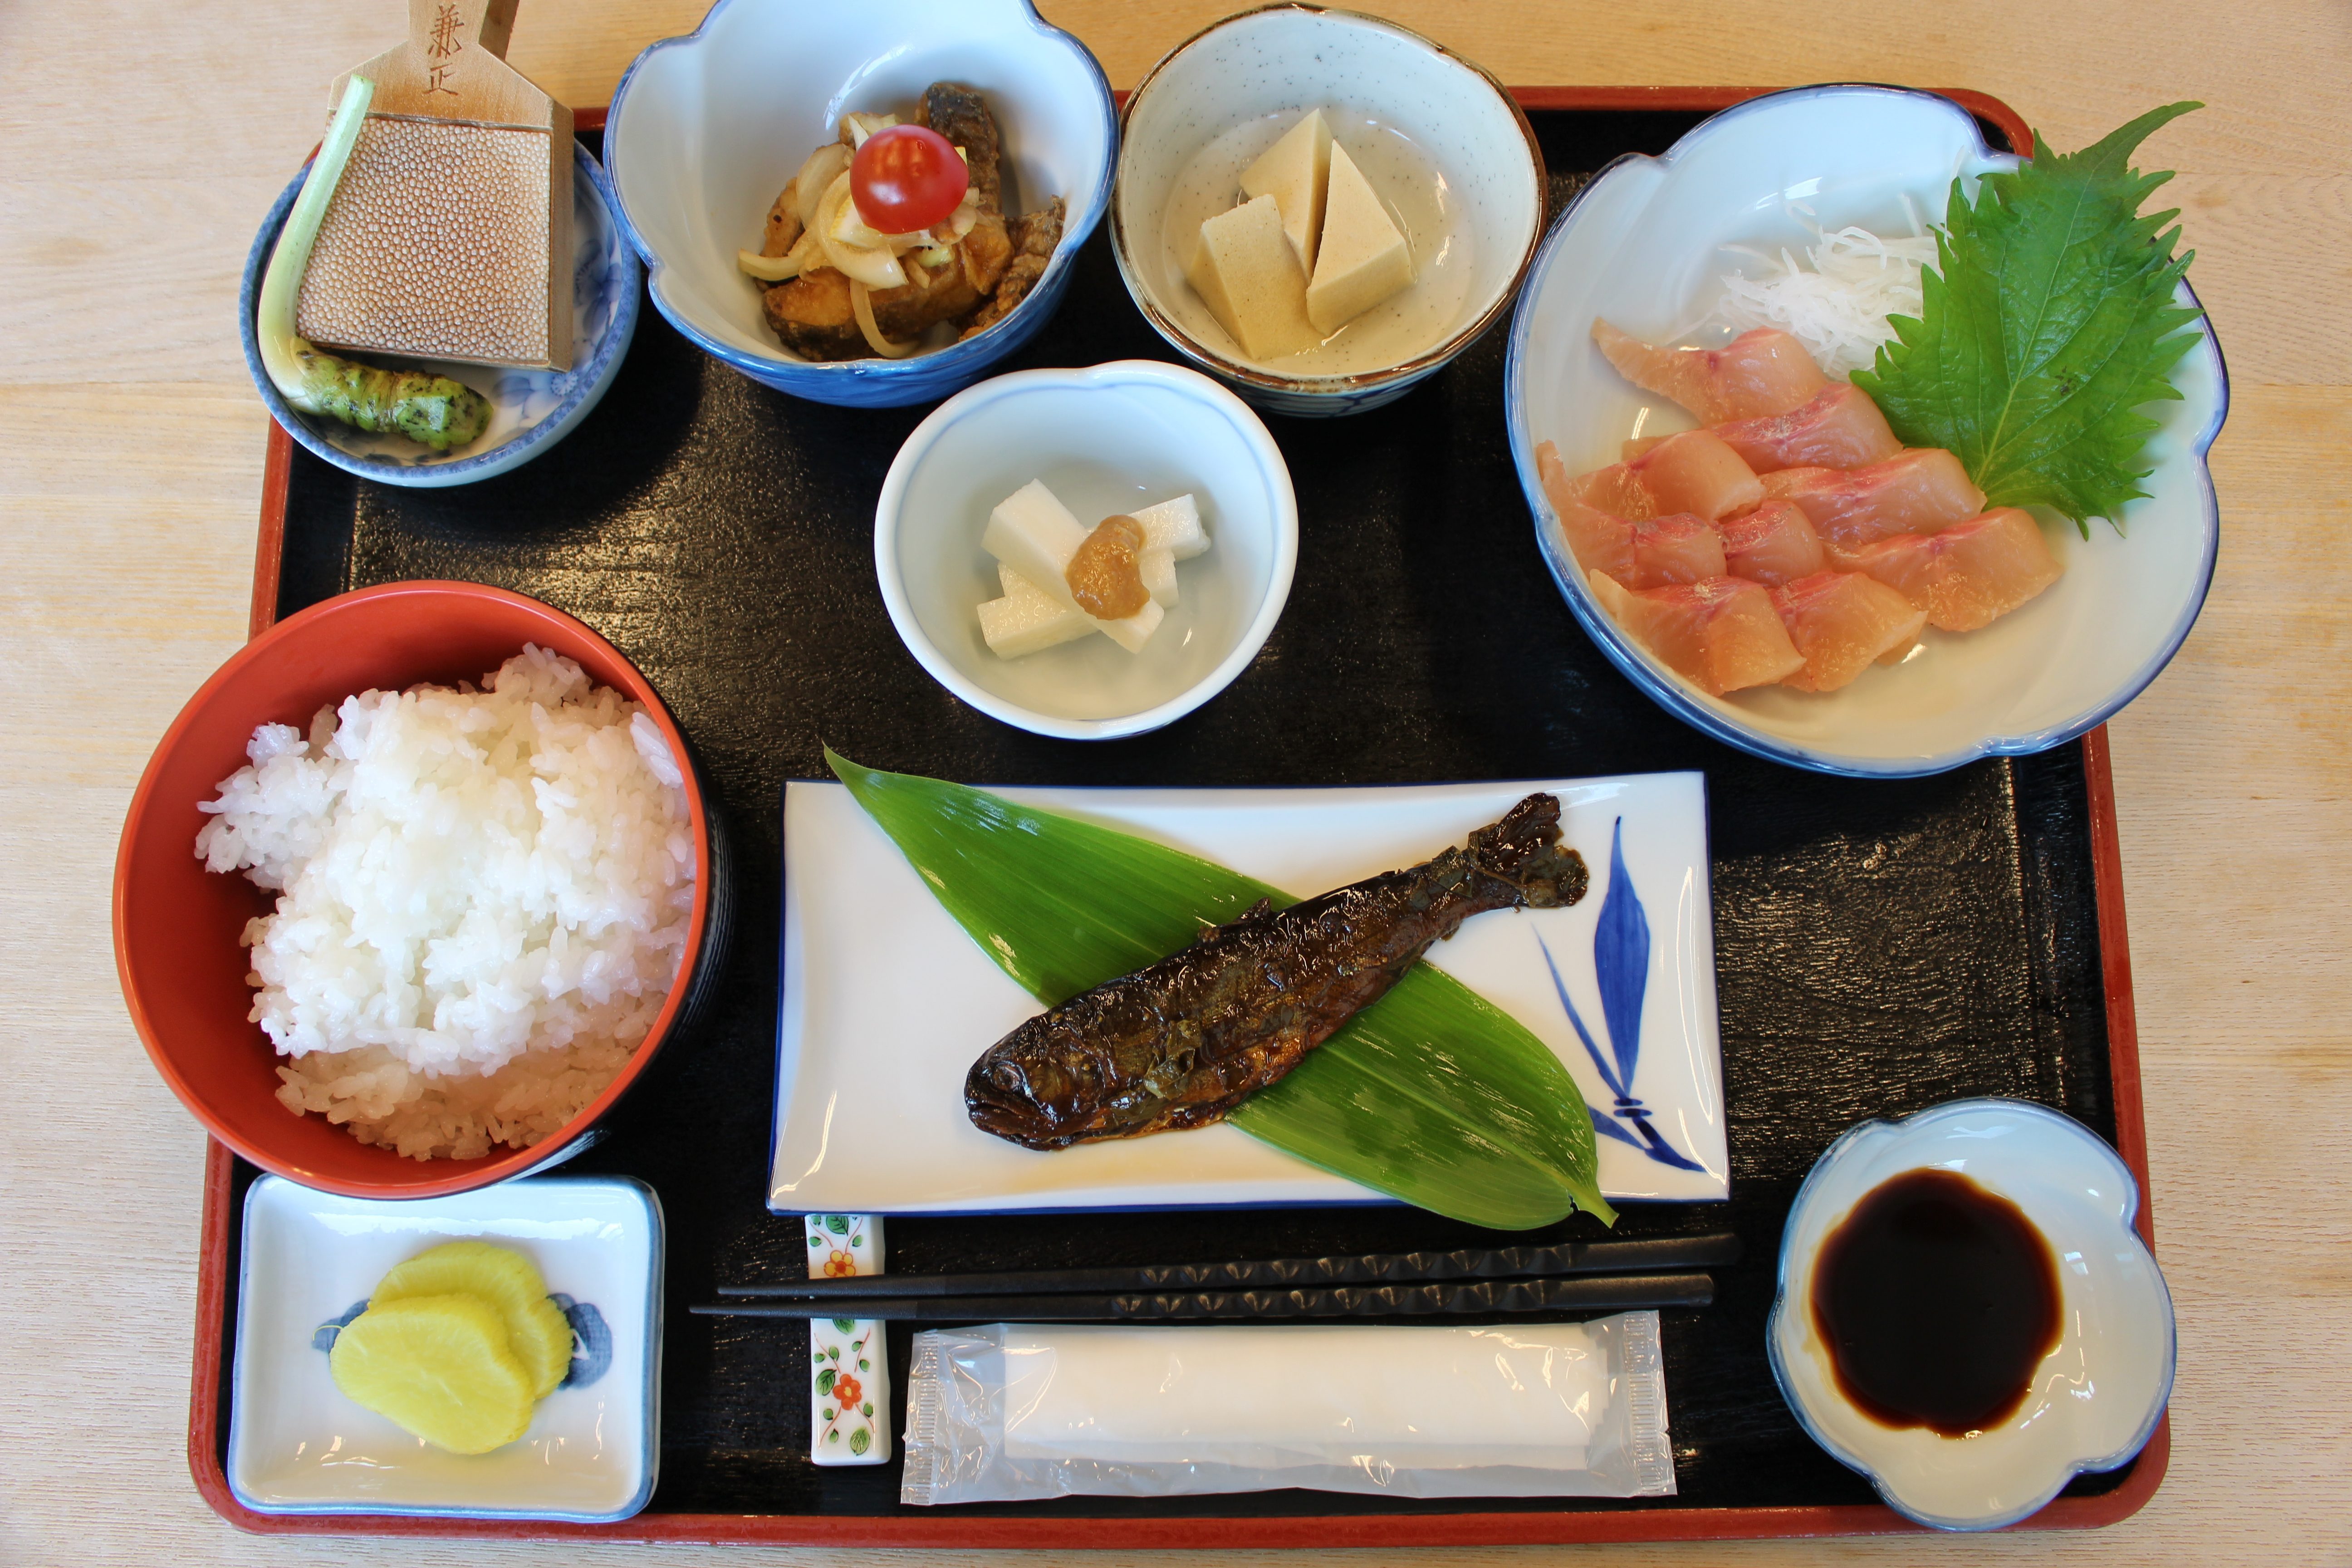 渓流料理いわなや 鳥取で岩魚料理を食べるならここ 思う存分岩魚を満喫できる食堂 倉吉市関金町 とっとりのーと